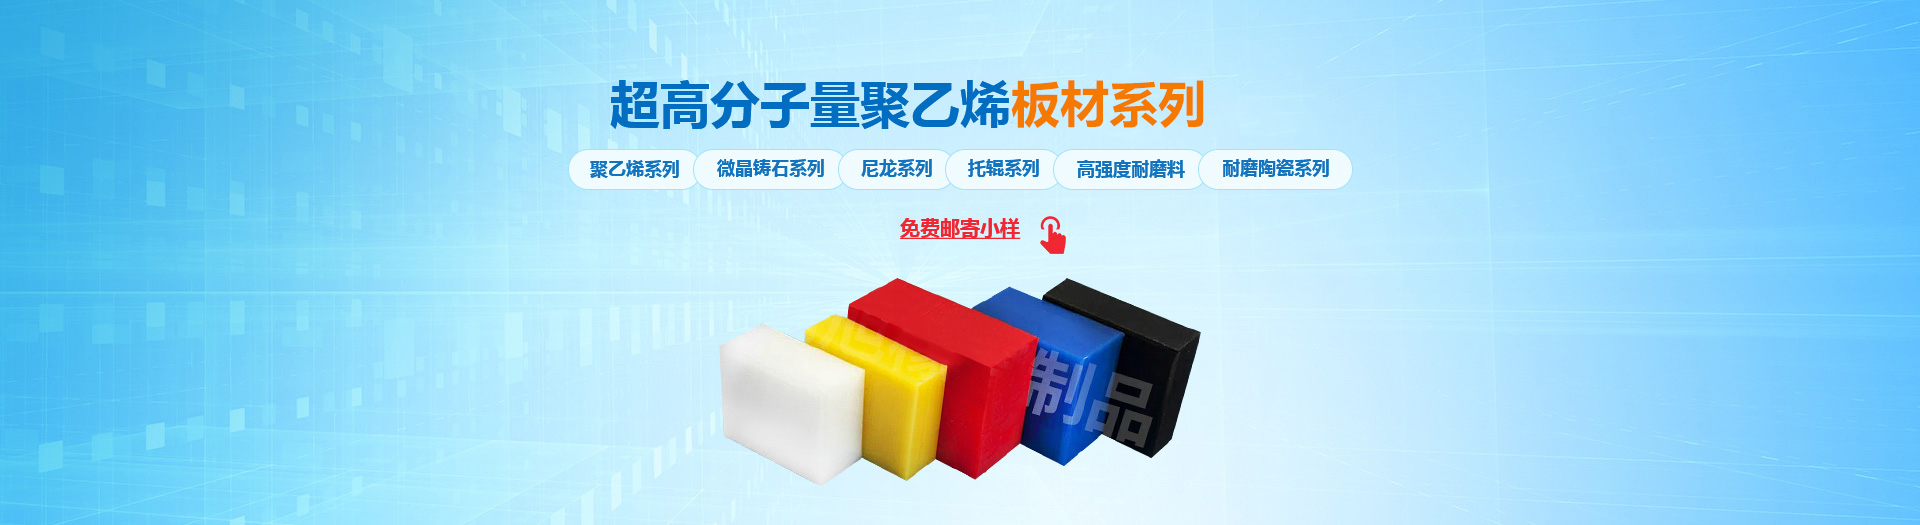 安陽宏誠工程塑料有限公司